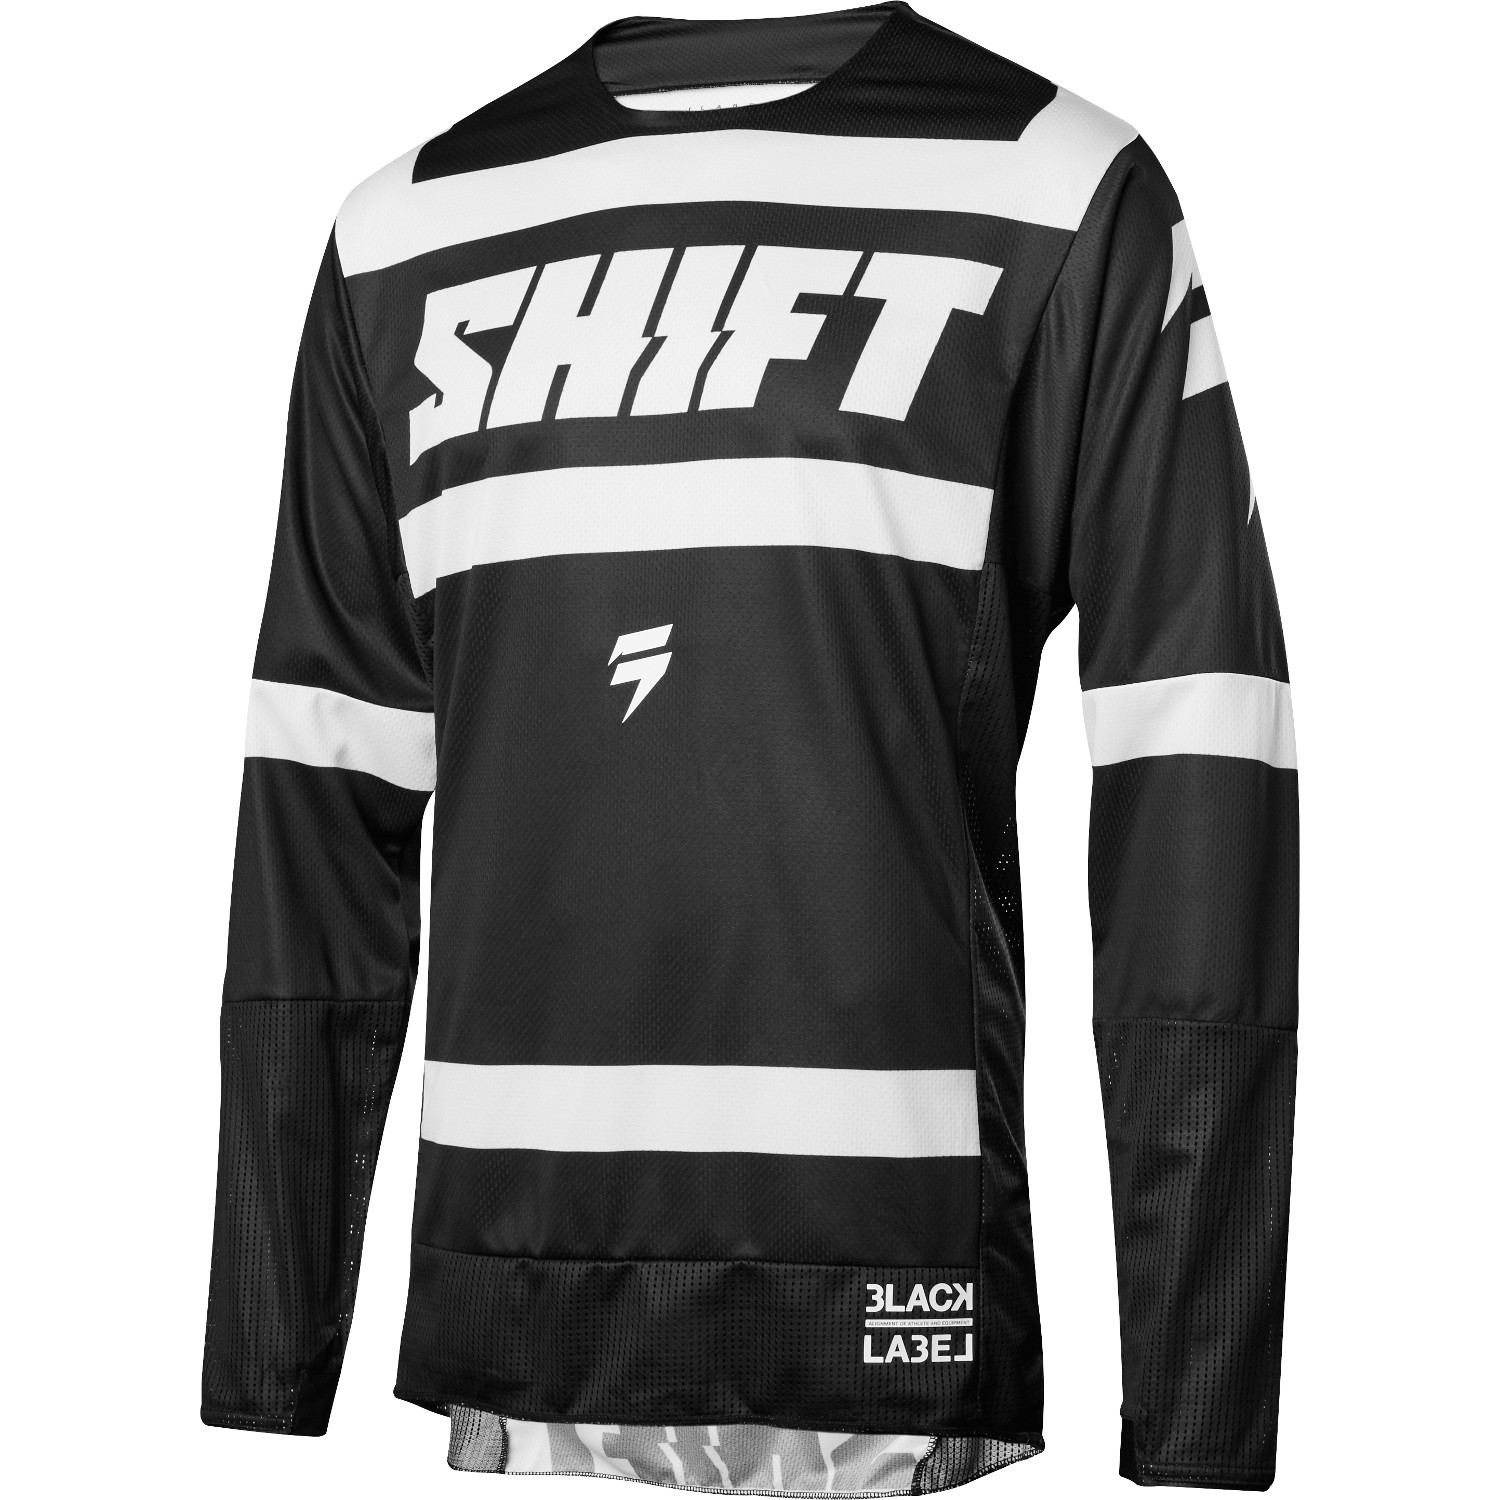 Shift Jersey 3lack Label Strike - Schwarz/Weiß